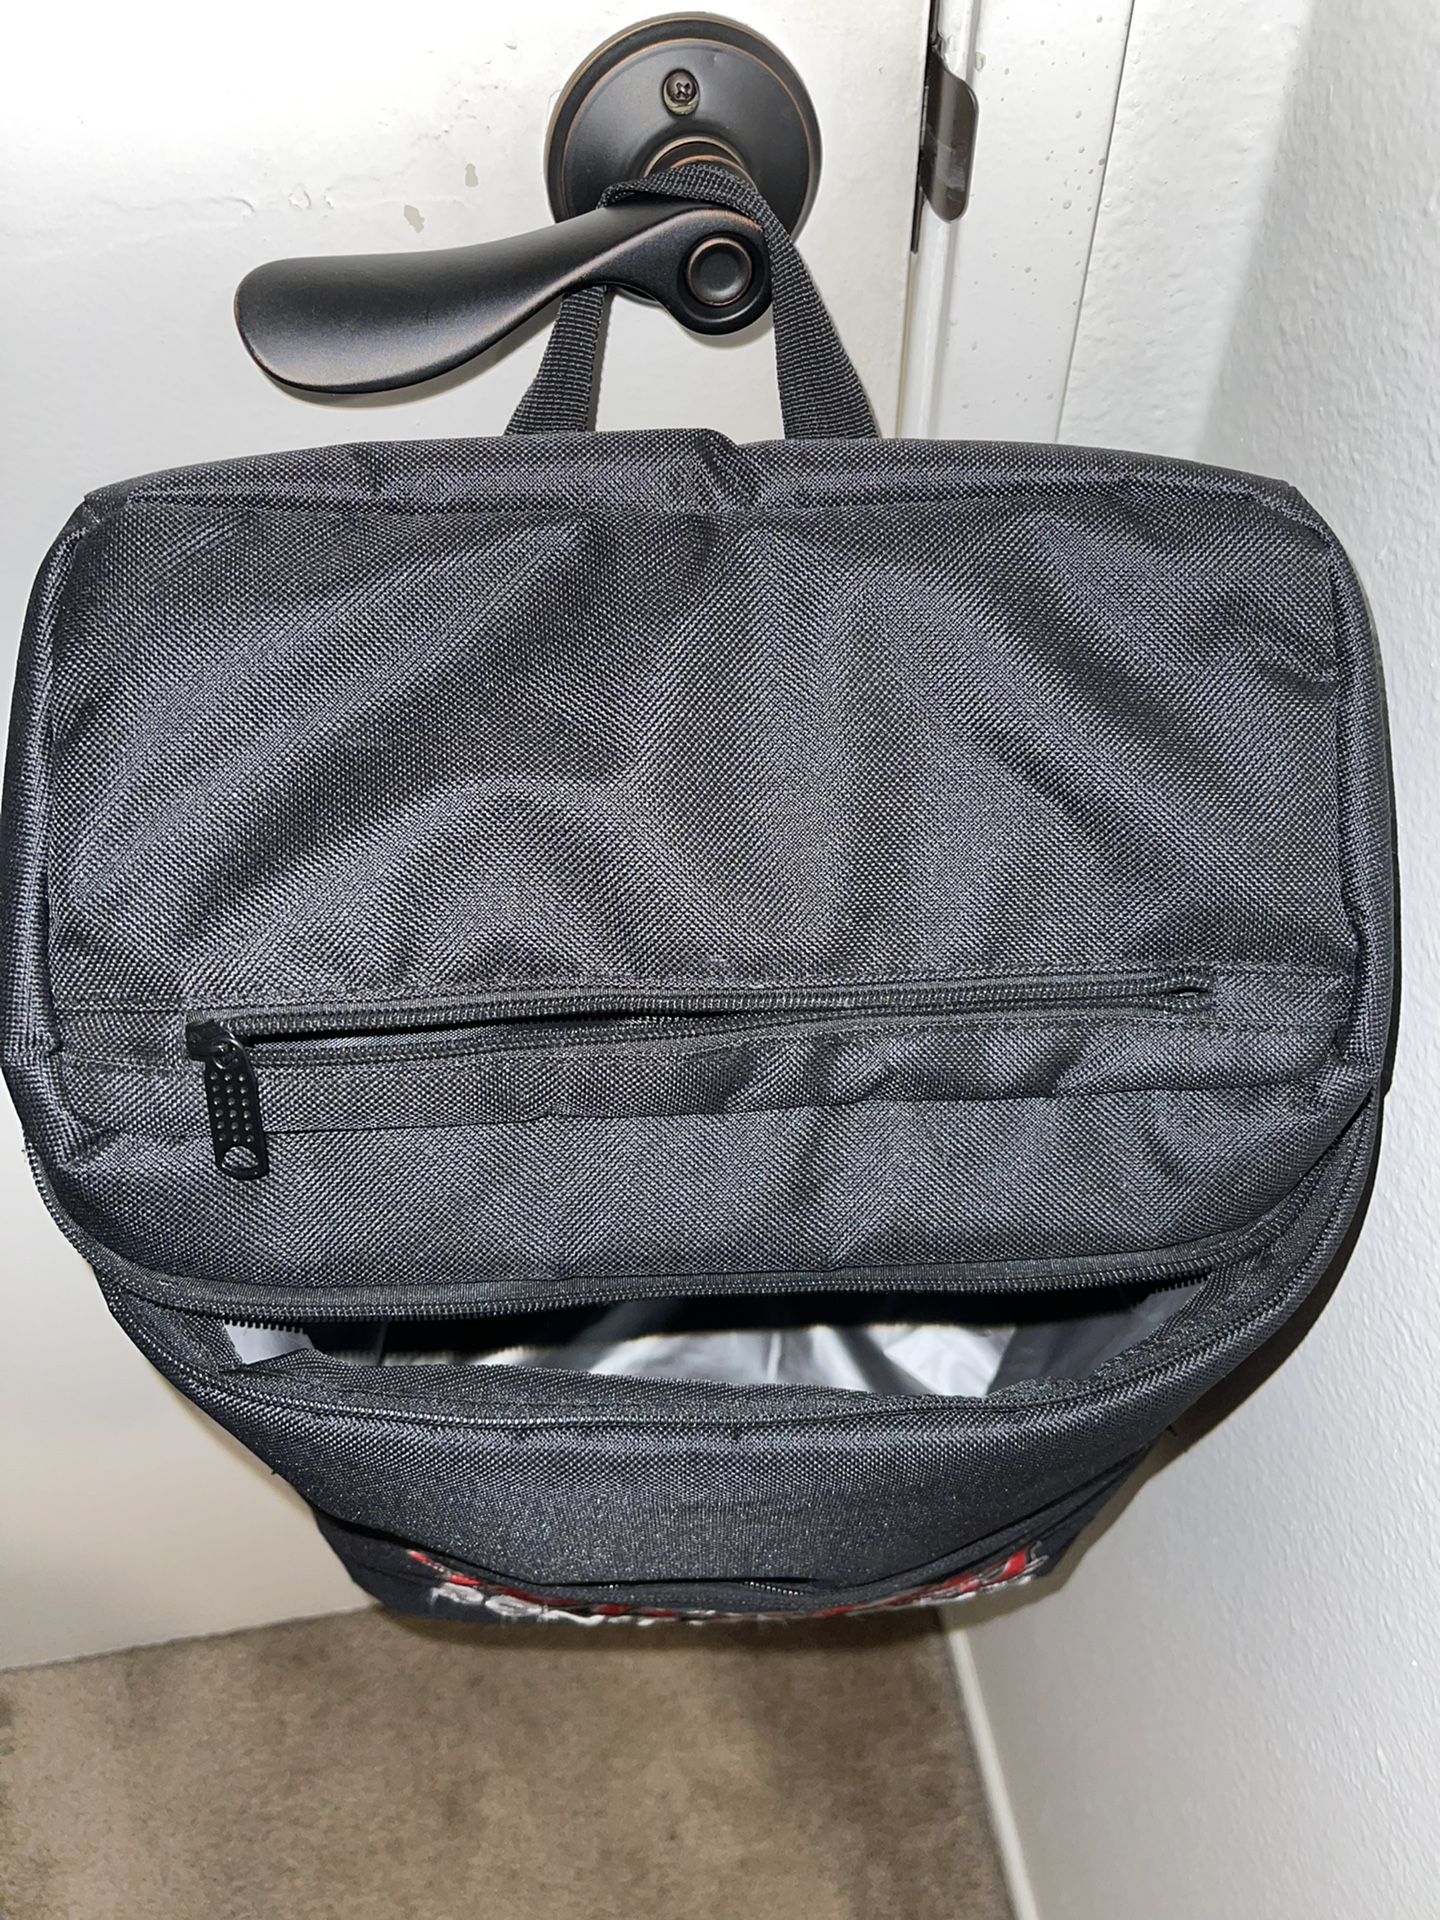 Backpack Cooler